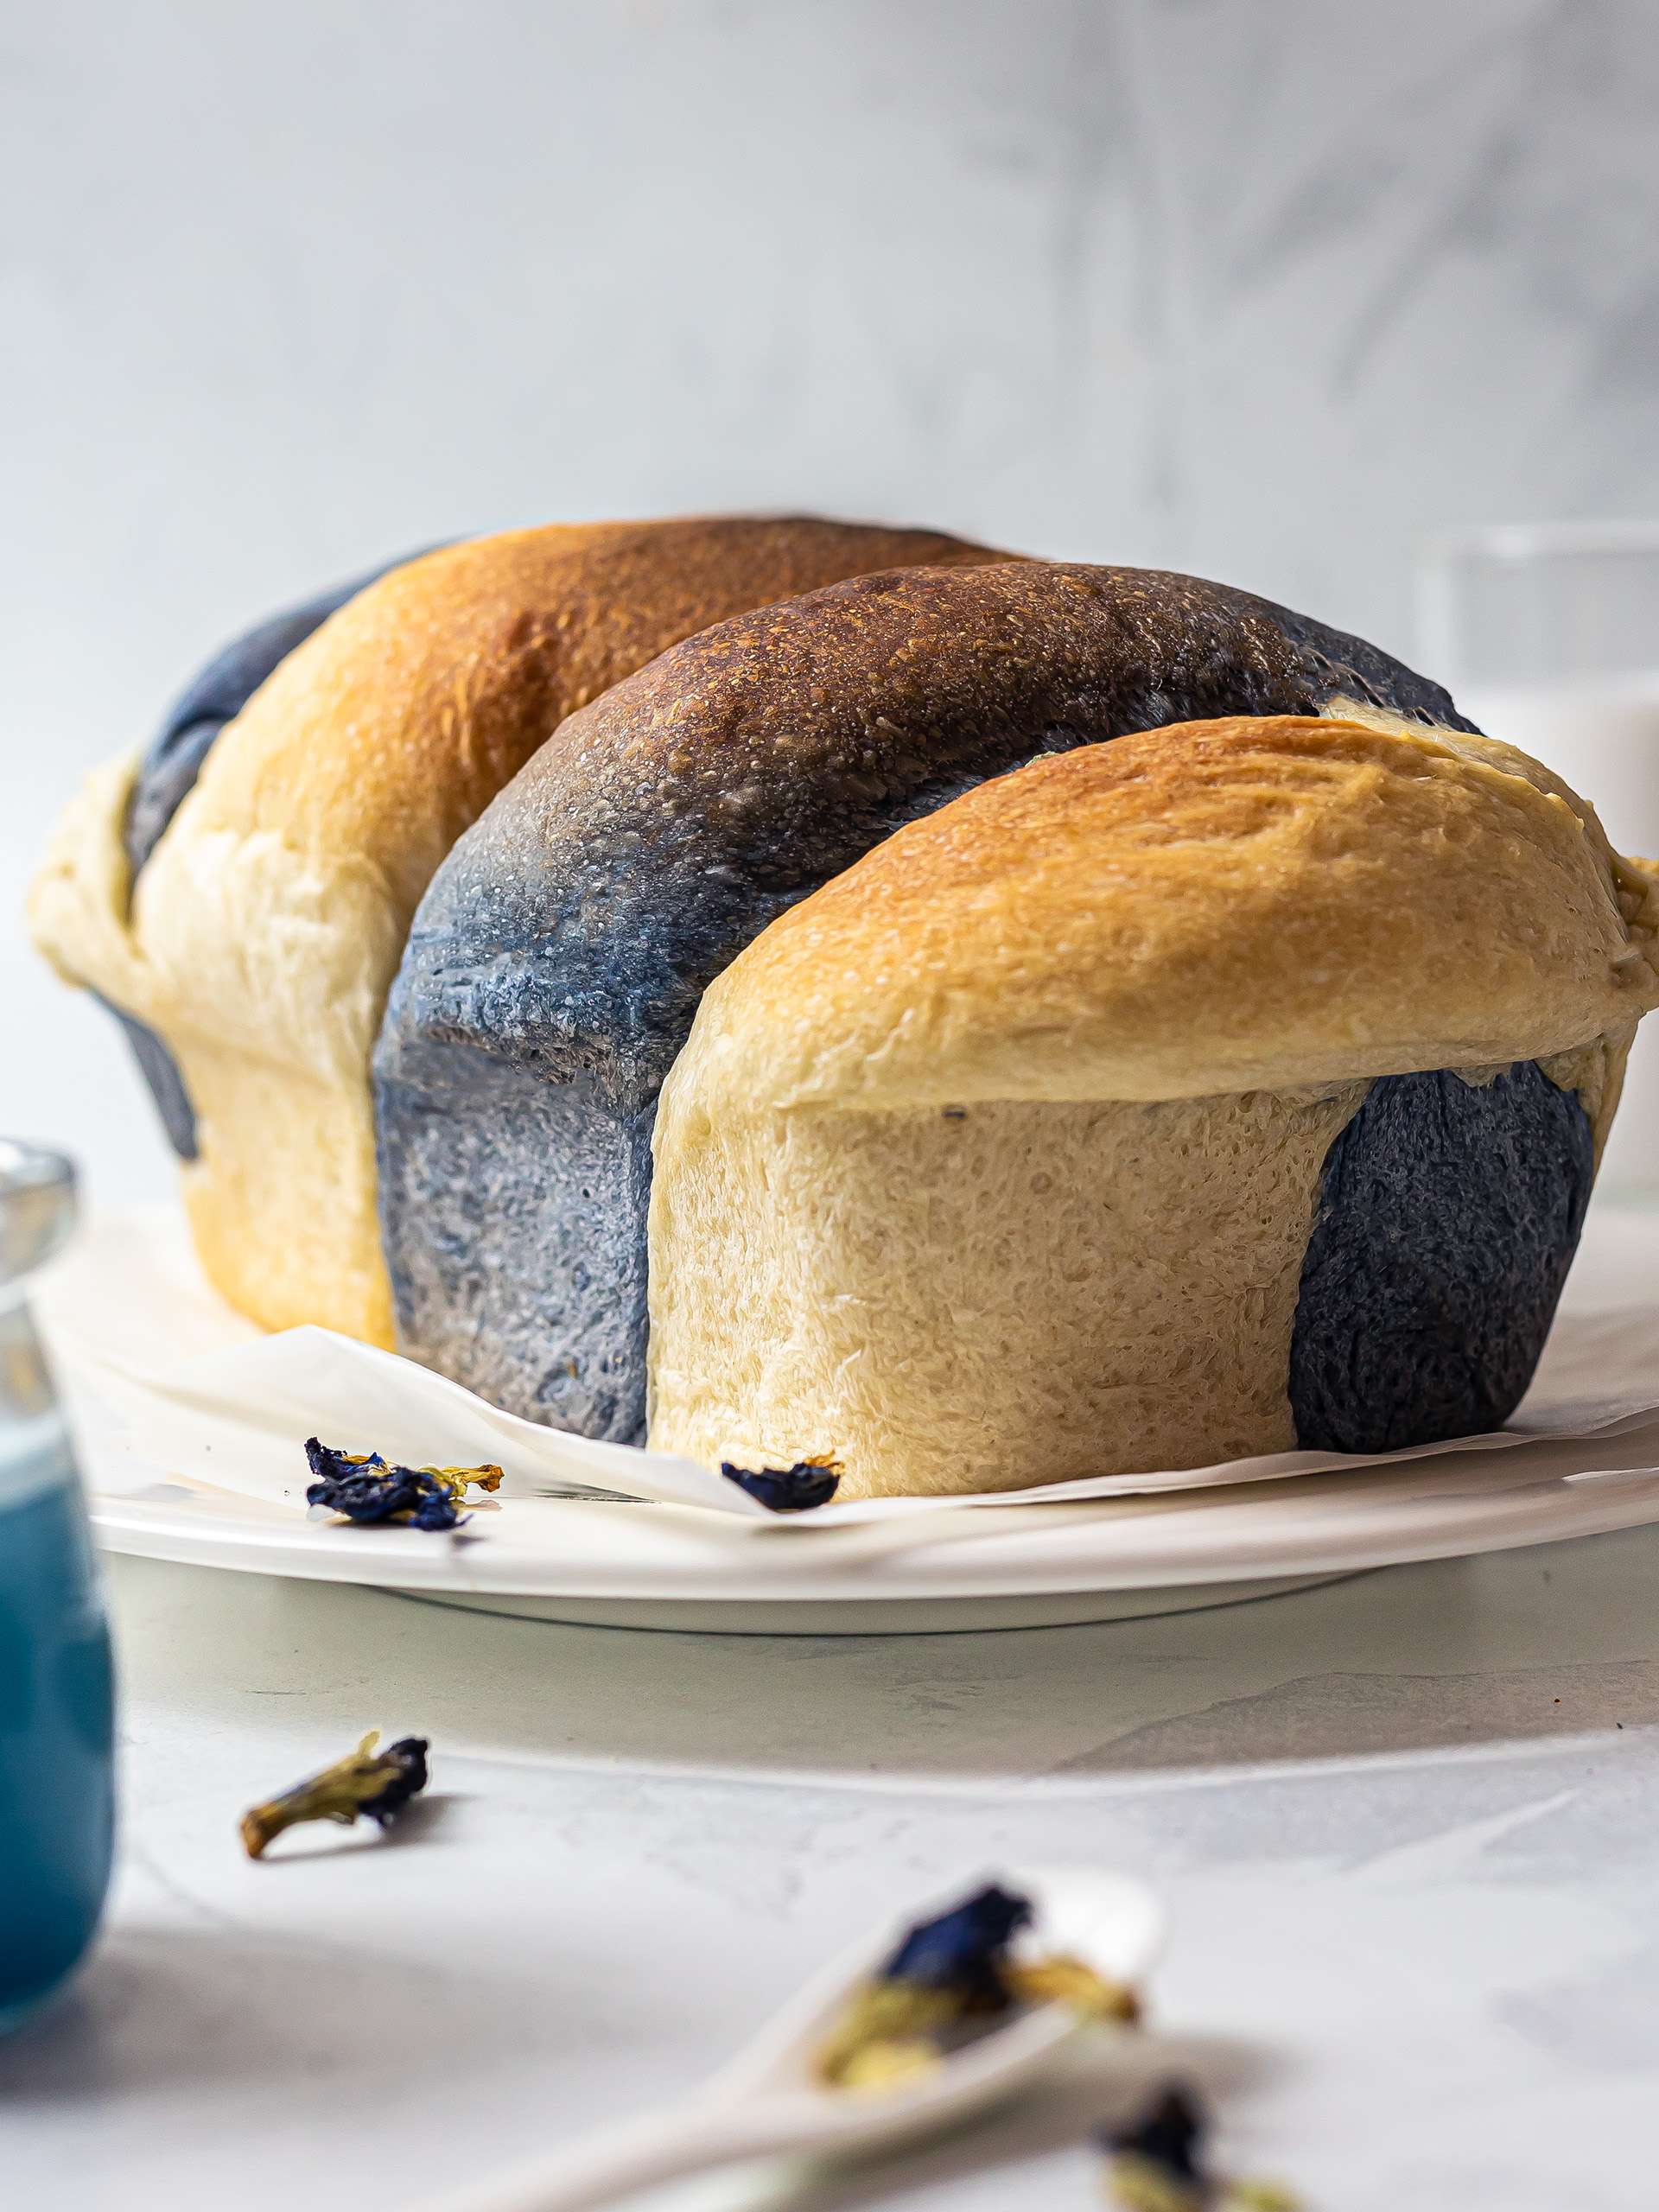 Butterfly Pea Bread (Braided Blue Milk Bread)